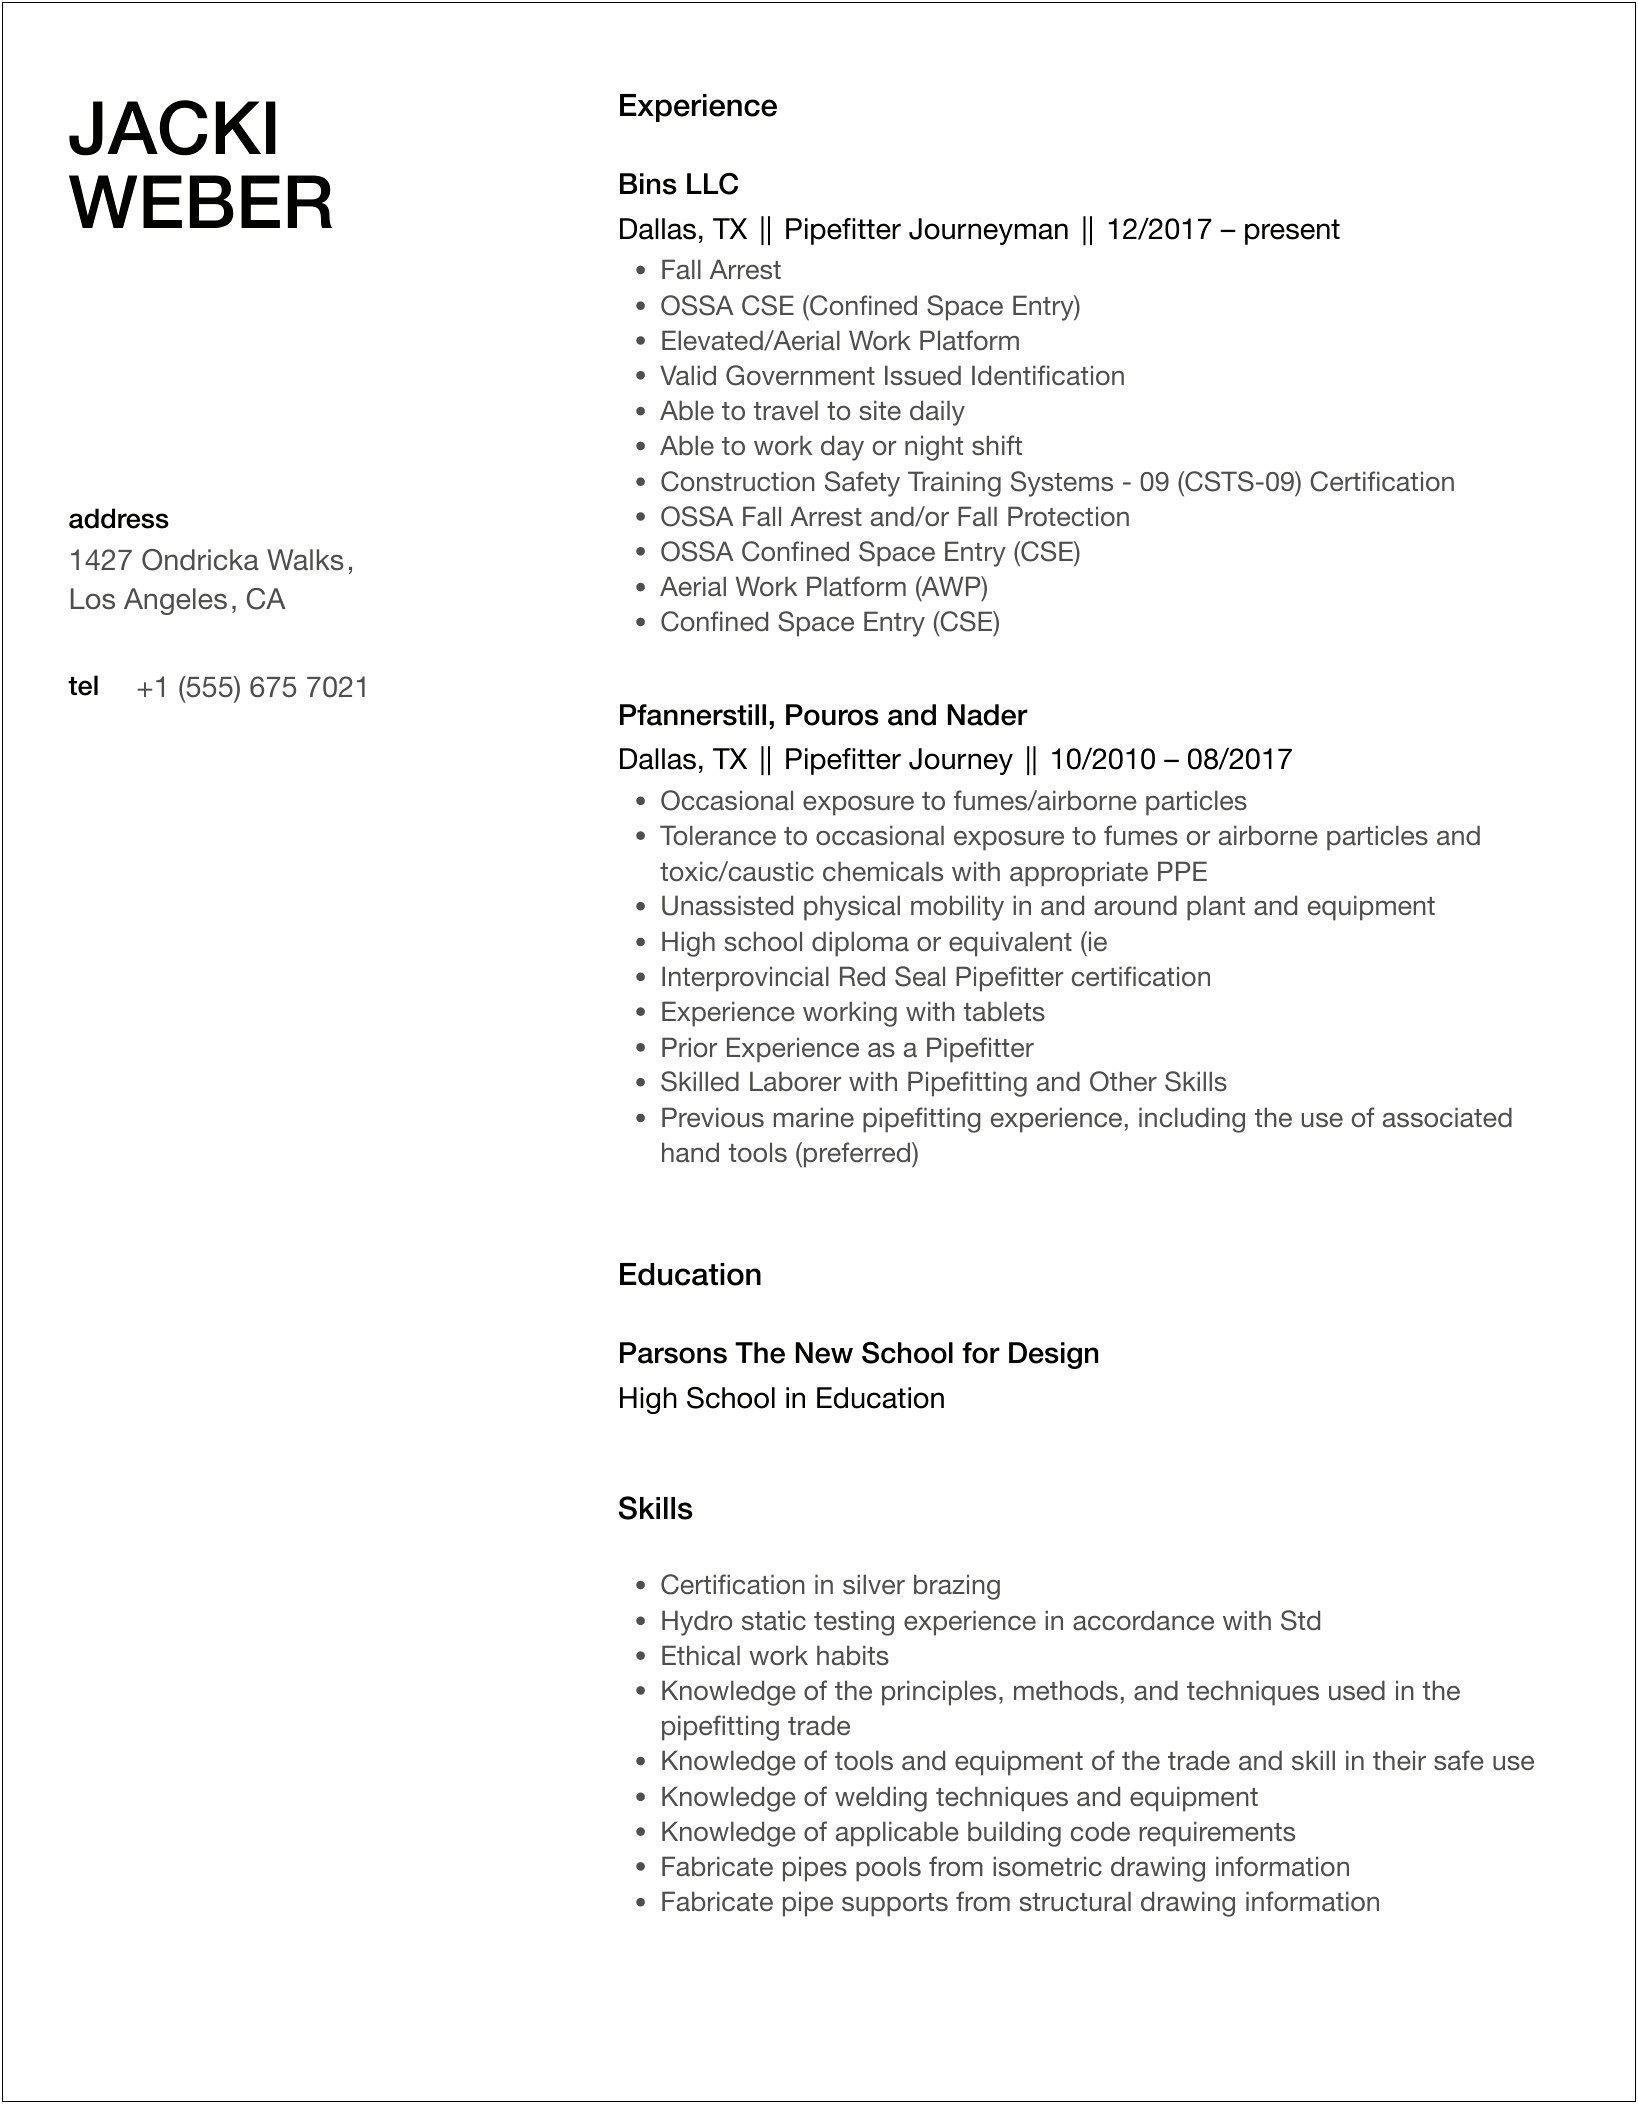 Pipefitter Helper Job Description For Resume